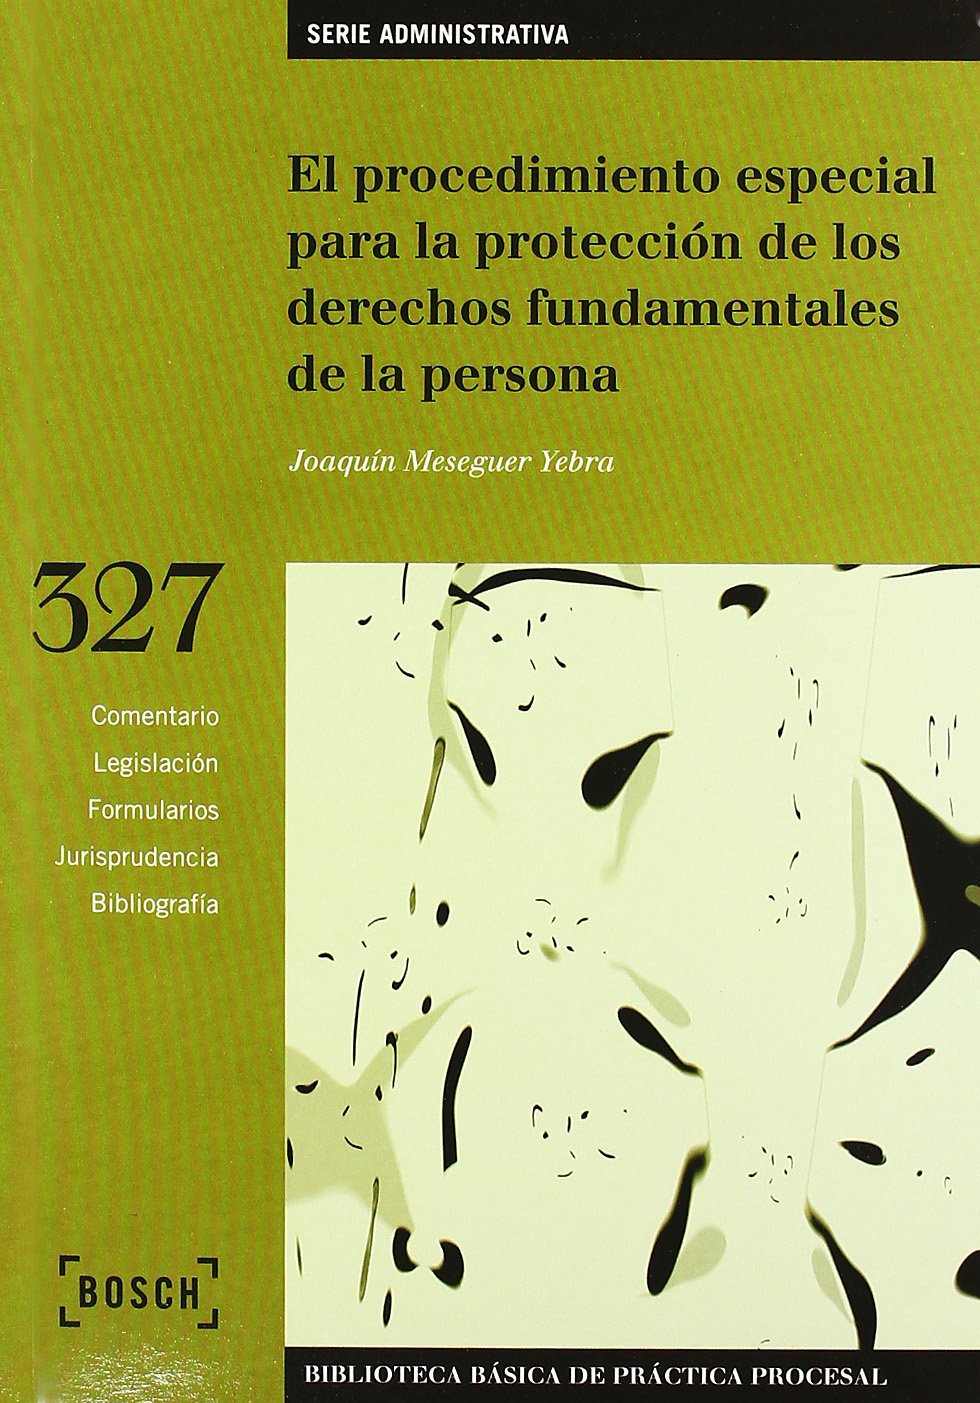 El procedimiento especial para la protección de los derechos fundamentales de la persona